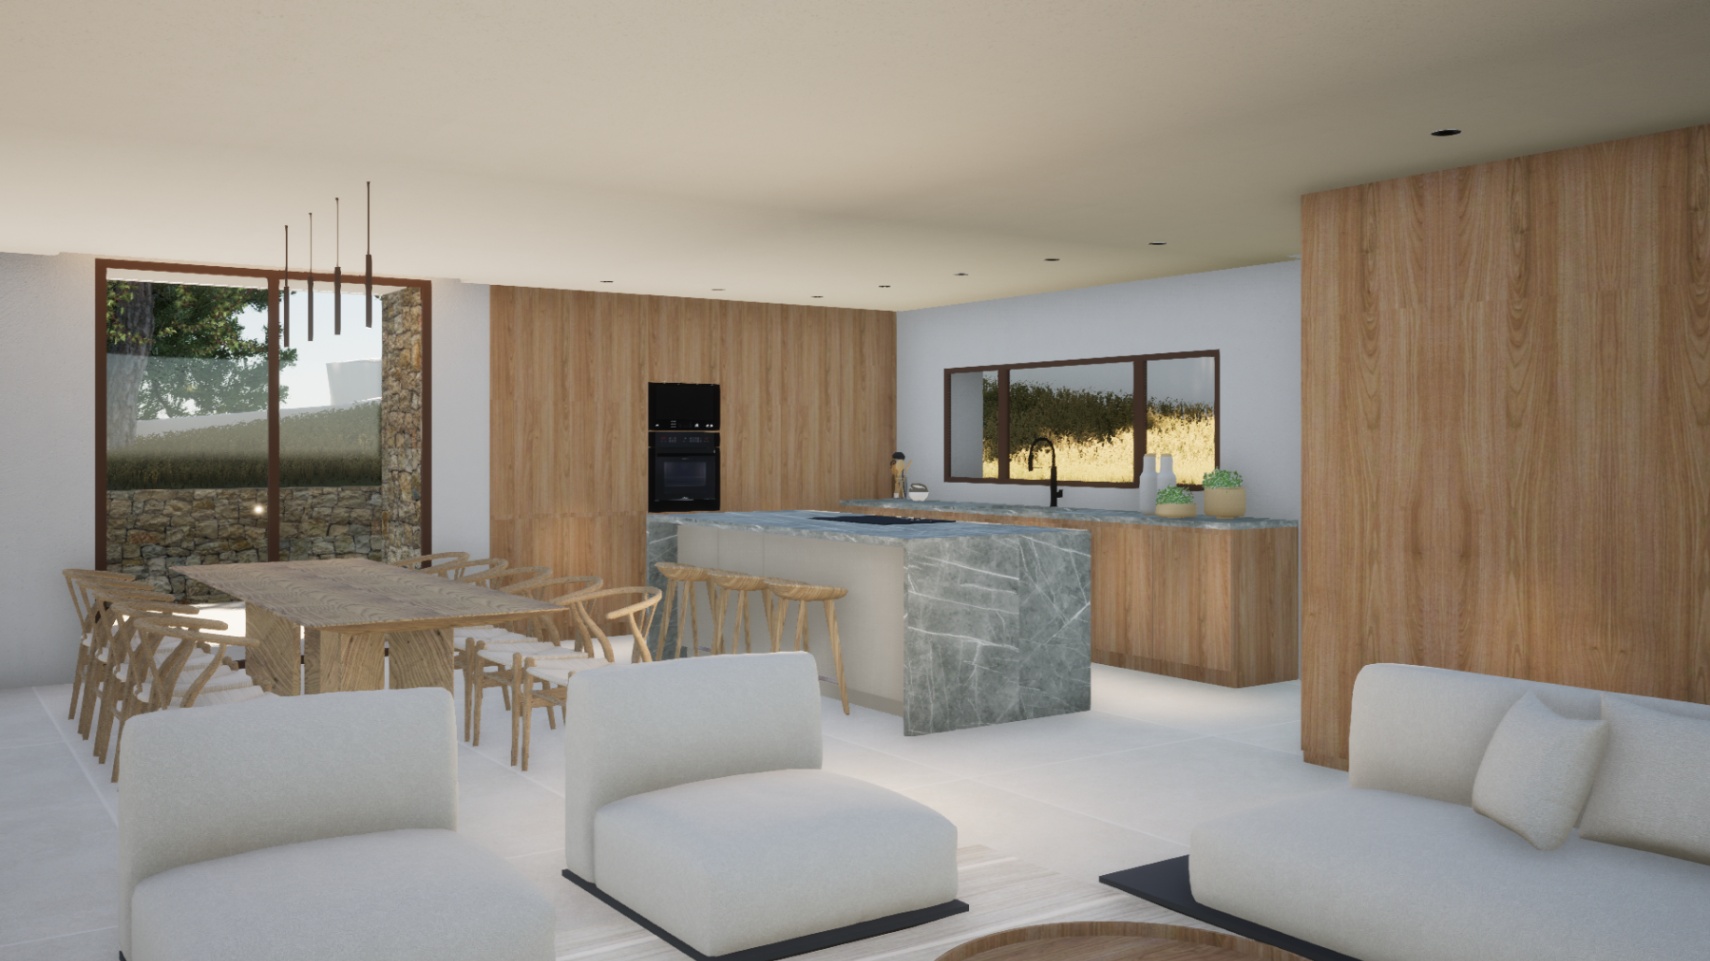 New build Ibizan style villa for sale in Costera del Mar Moraira, Costa Blanca